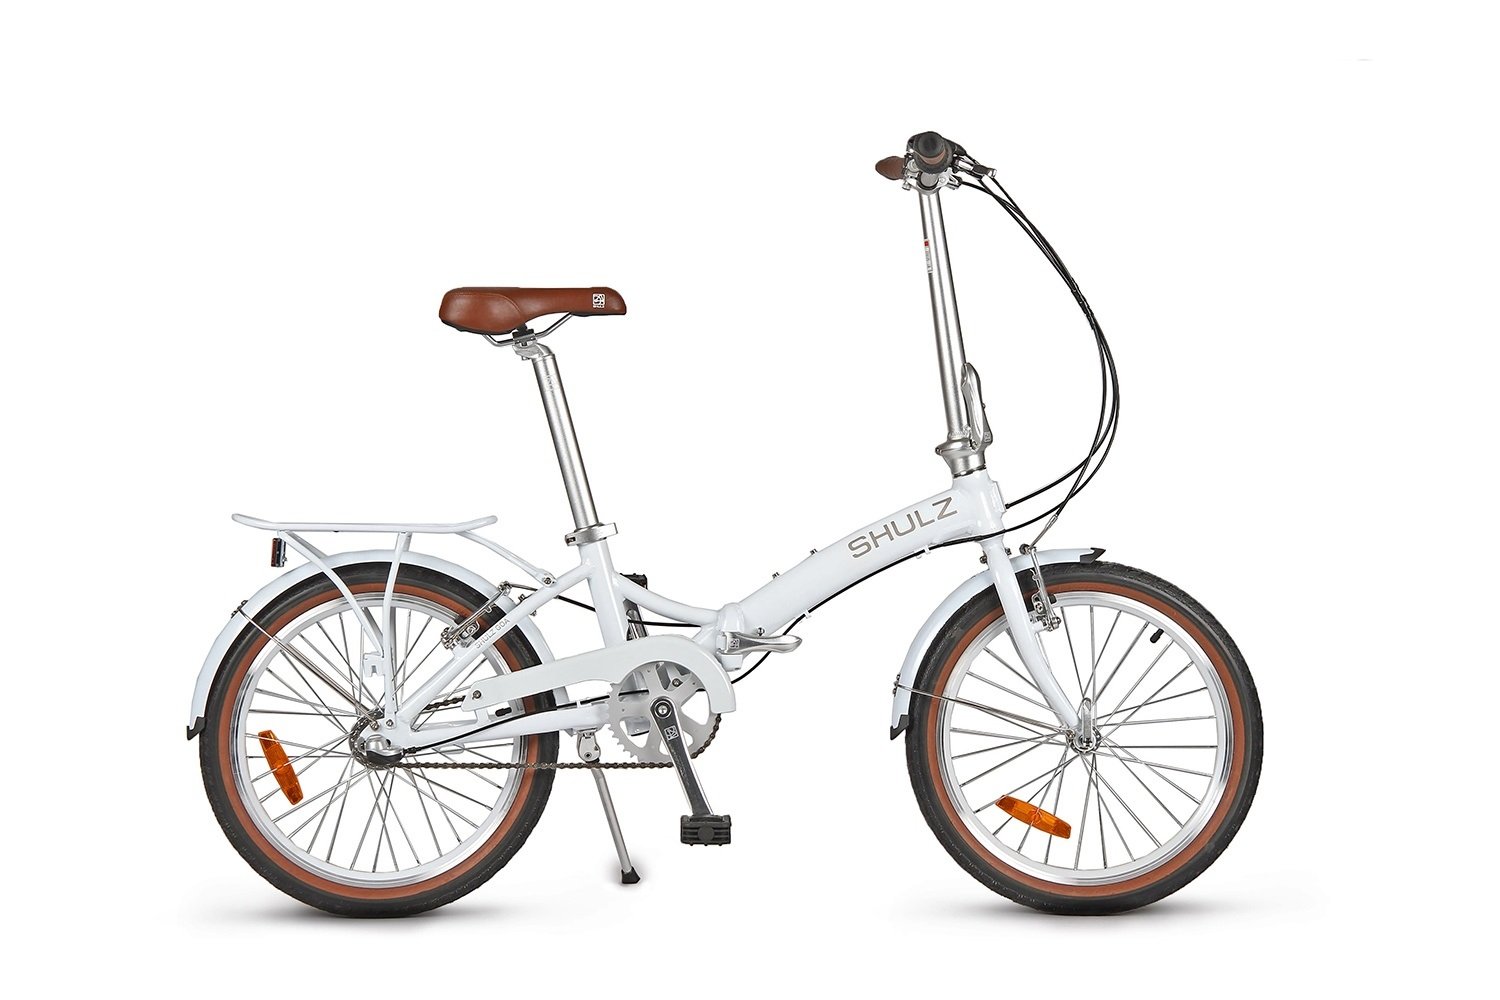 Складной велосипед SHULZ GOA V '16 складной белый, 2021, 16GVWH журнал звезда 7 2021